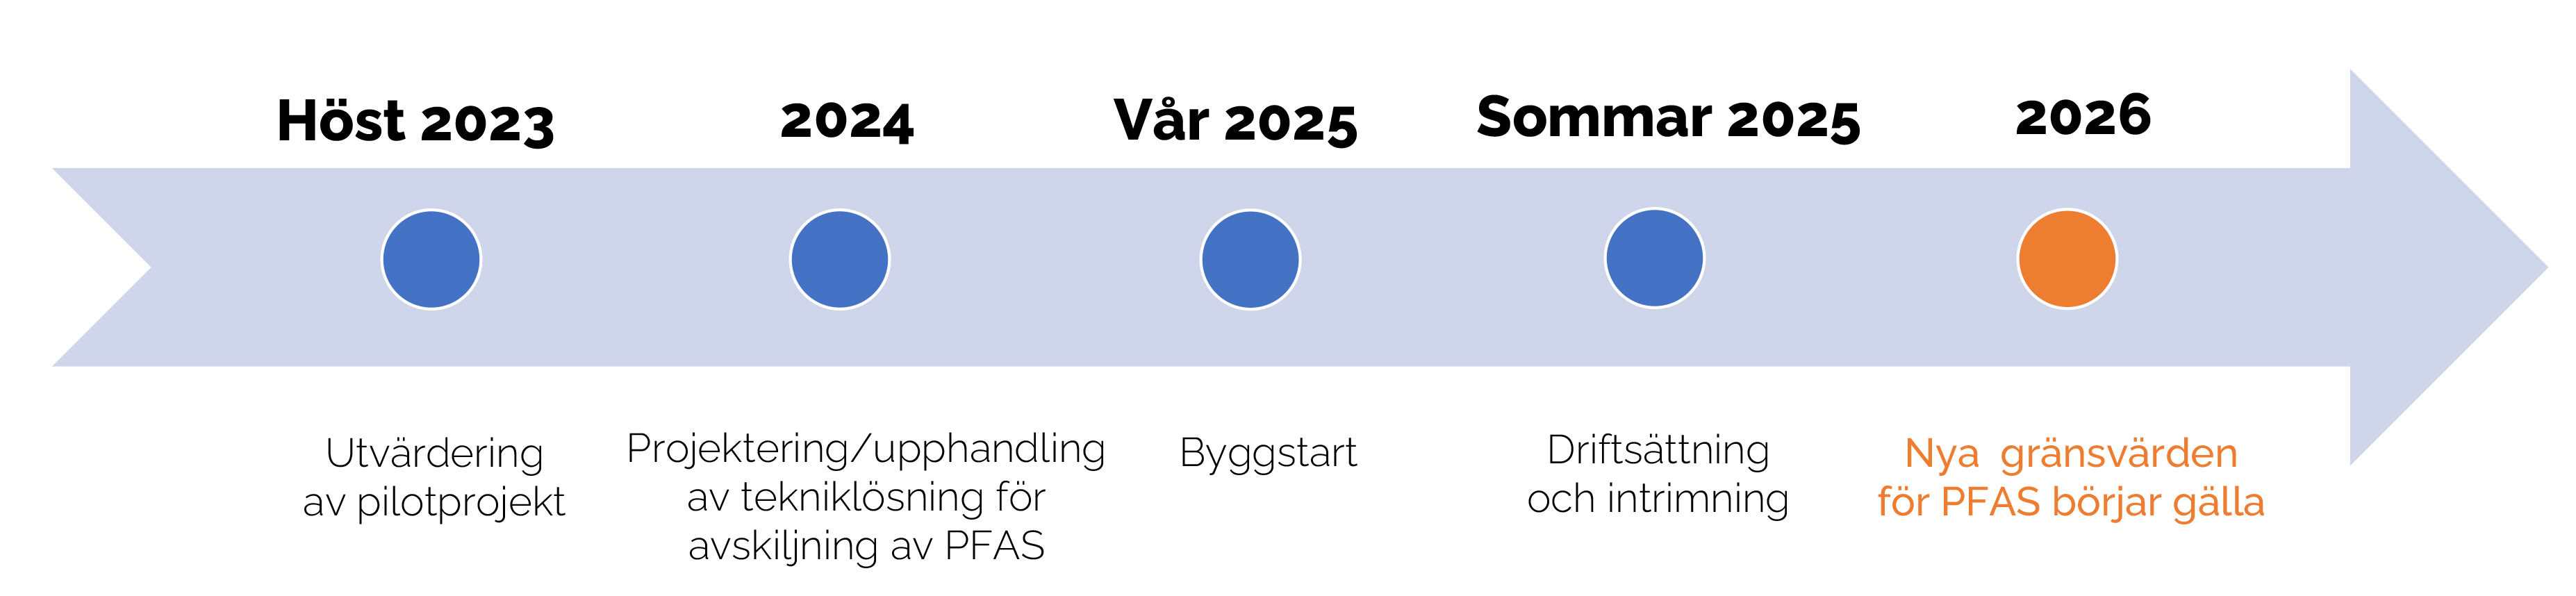 Tidslinje från 2020 till 2024 som beskriver processen för upphandling av tekniklösning